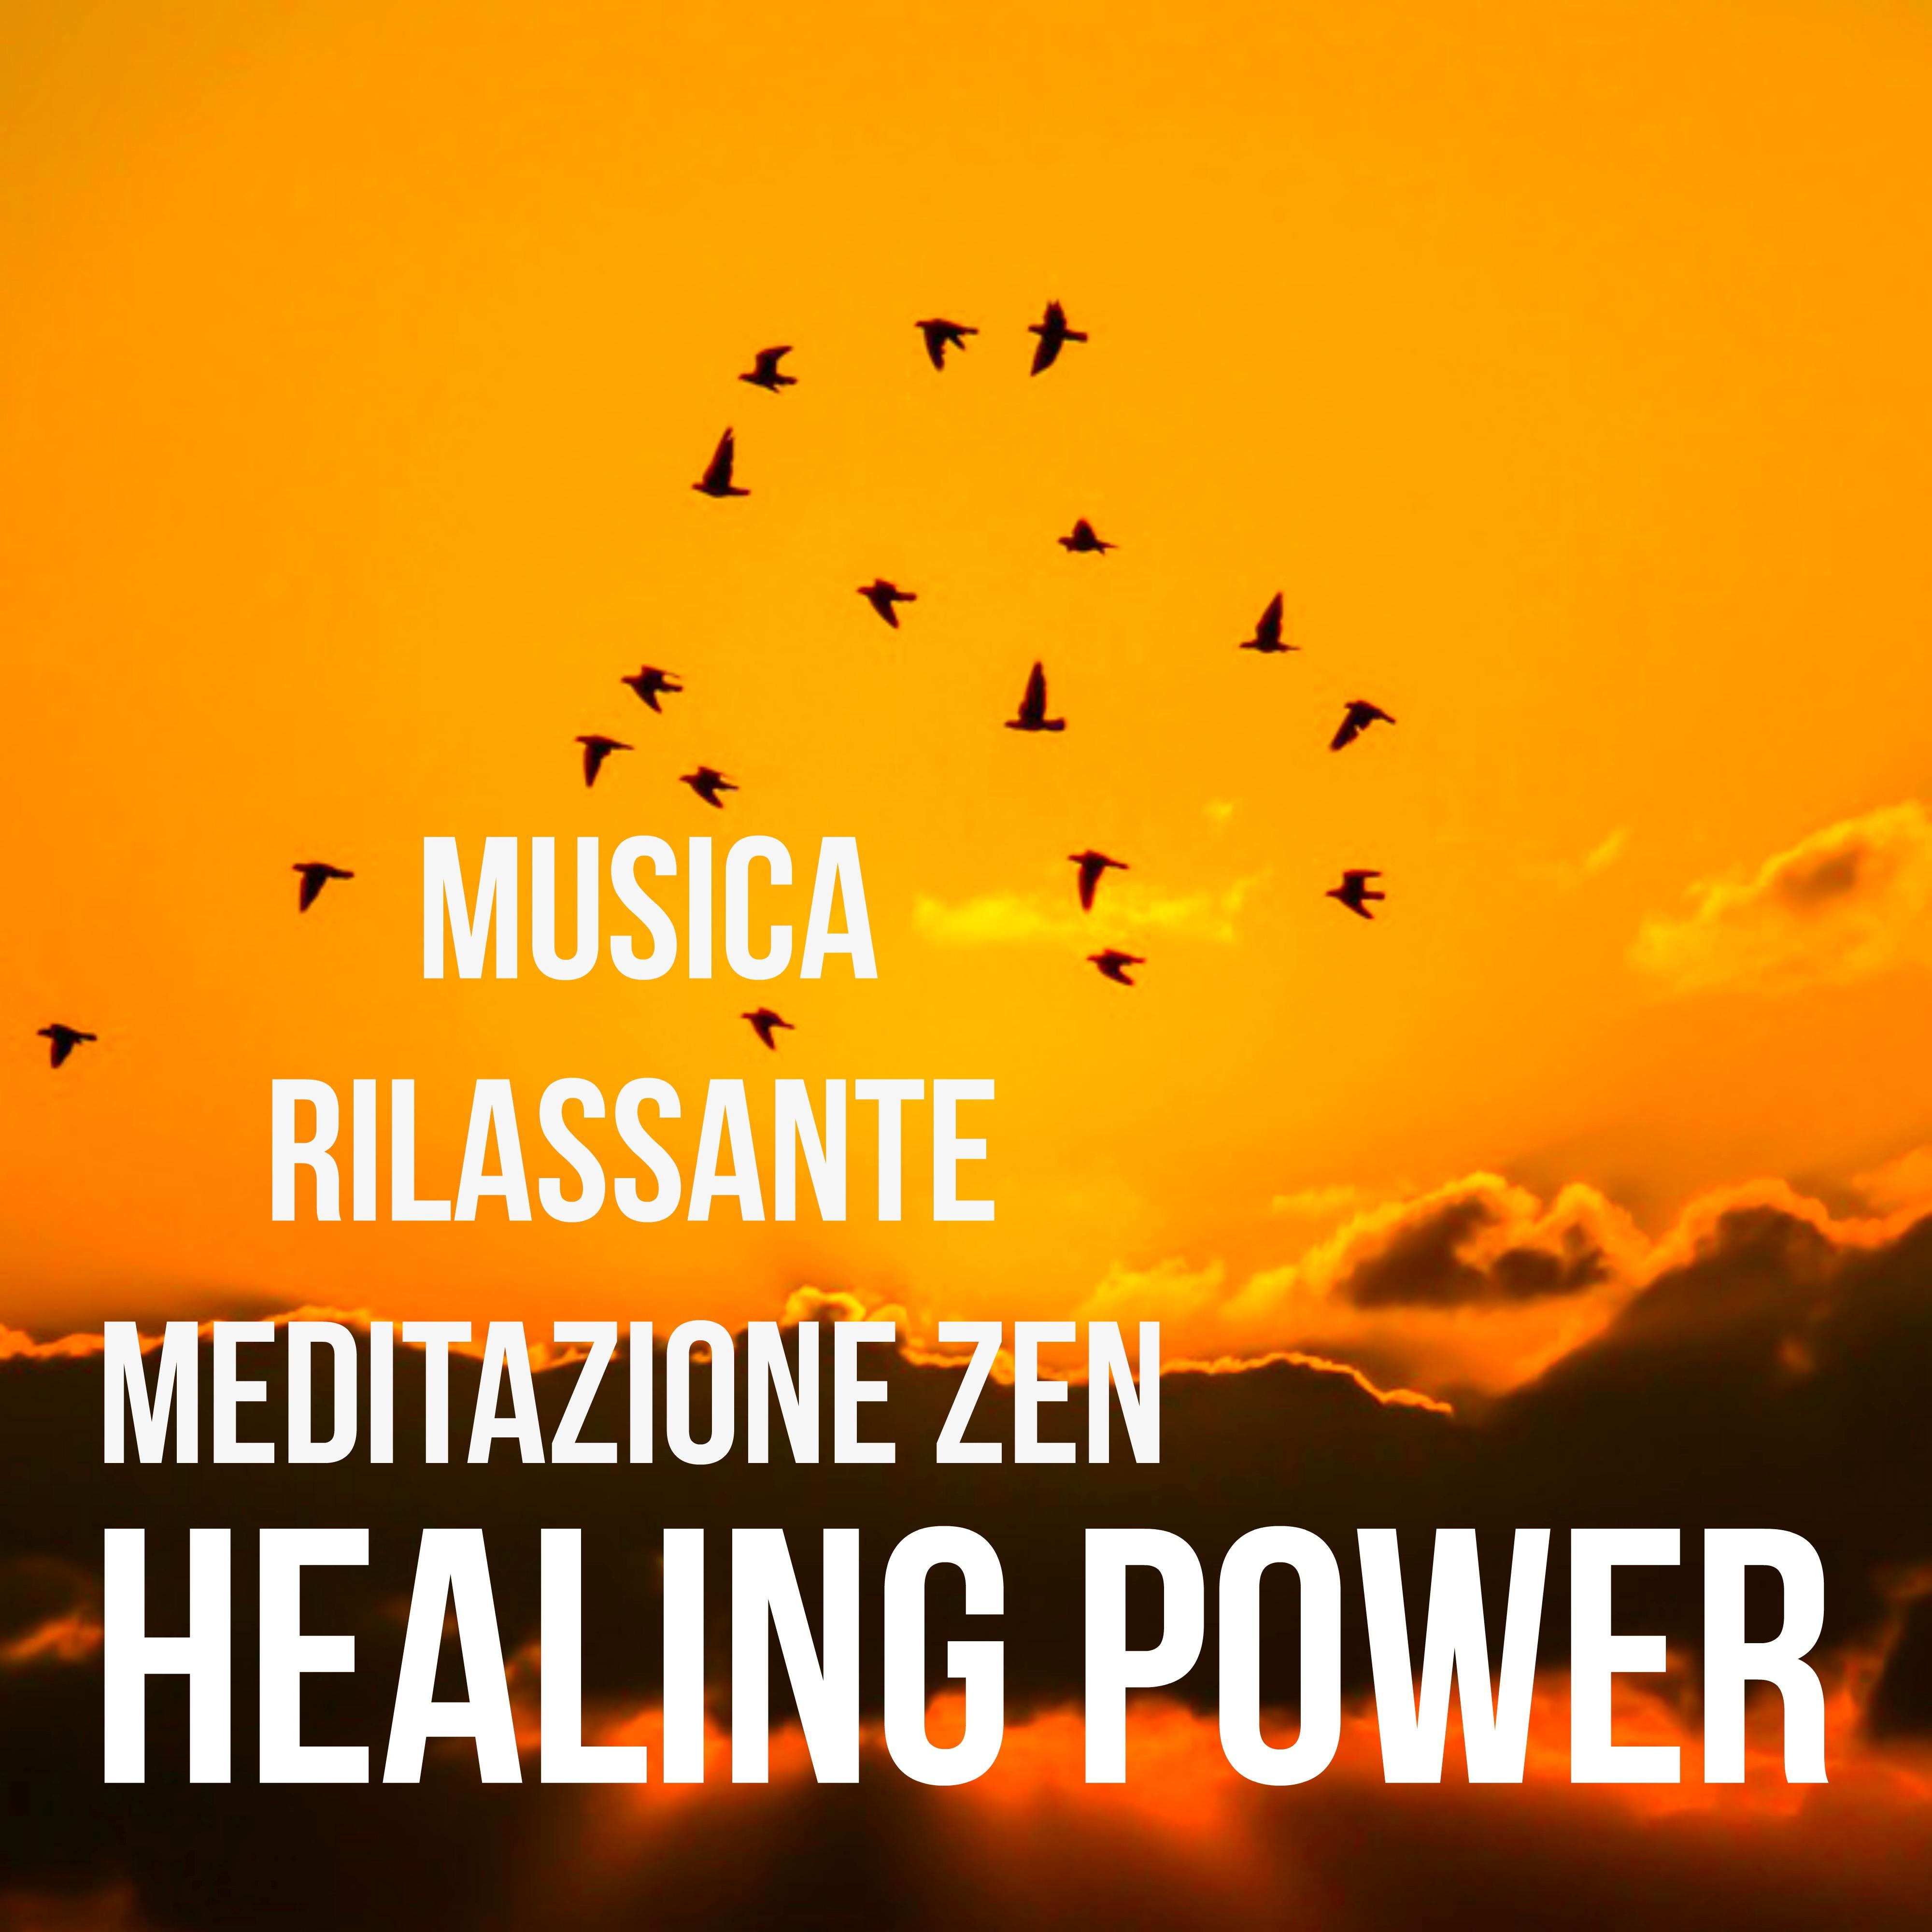 Healing Power - Musica Soft Rilassante per Meditazione Zen Massoterapia Potere della Mente con Suoni New Age Strumentali